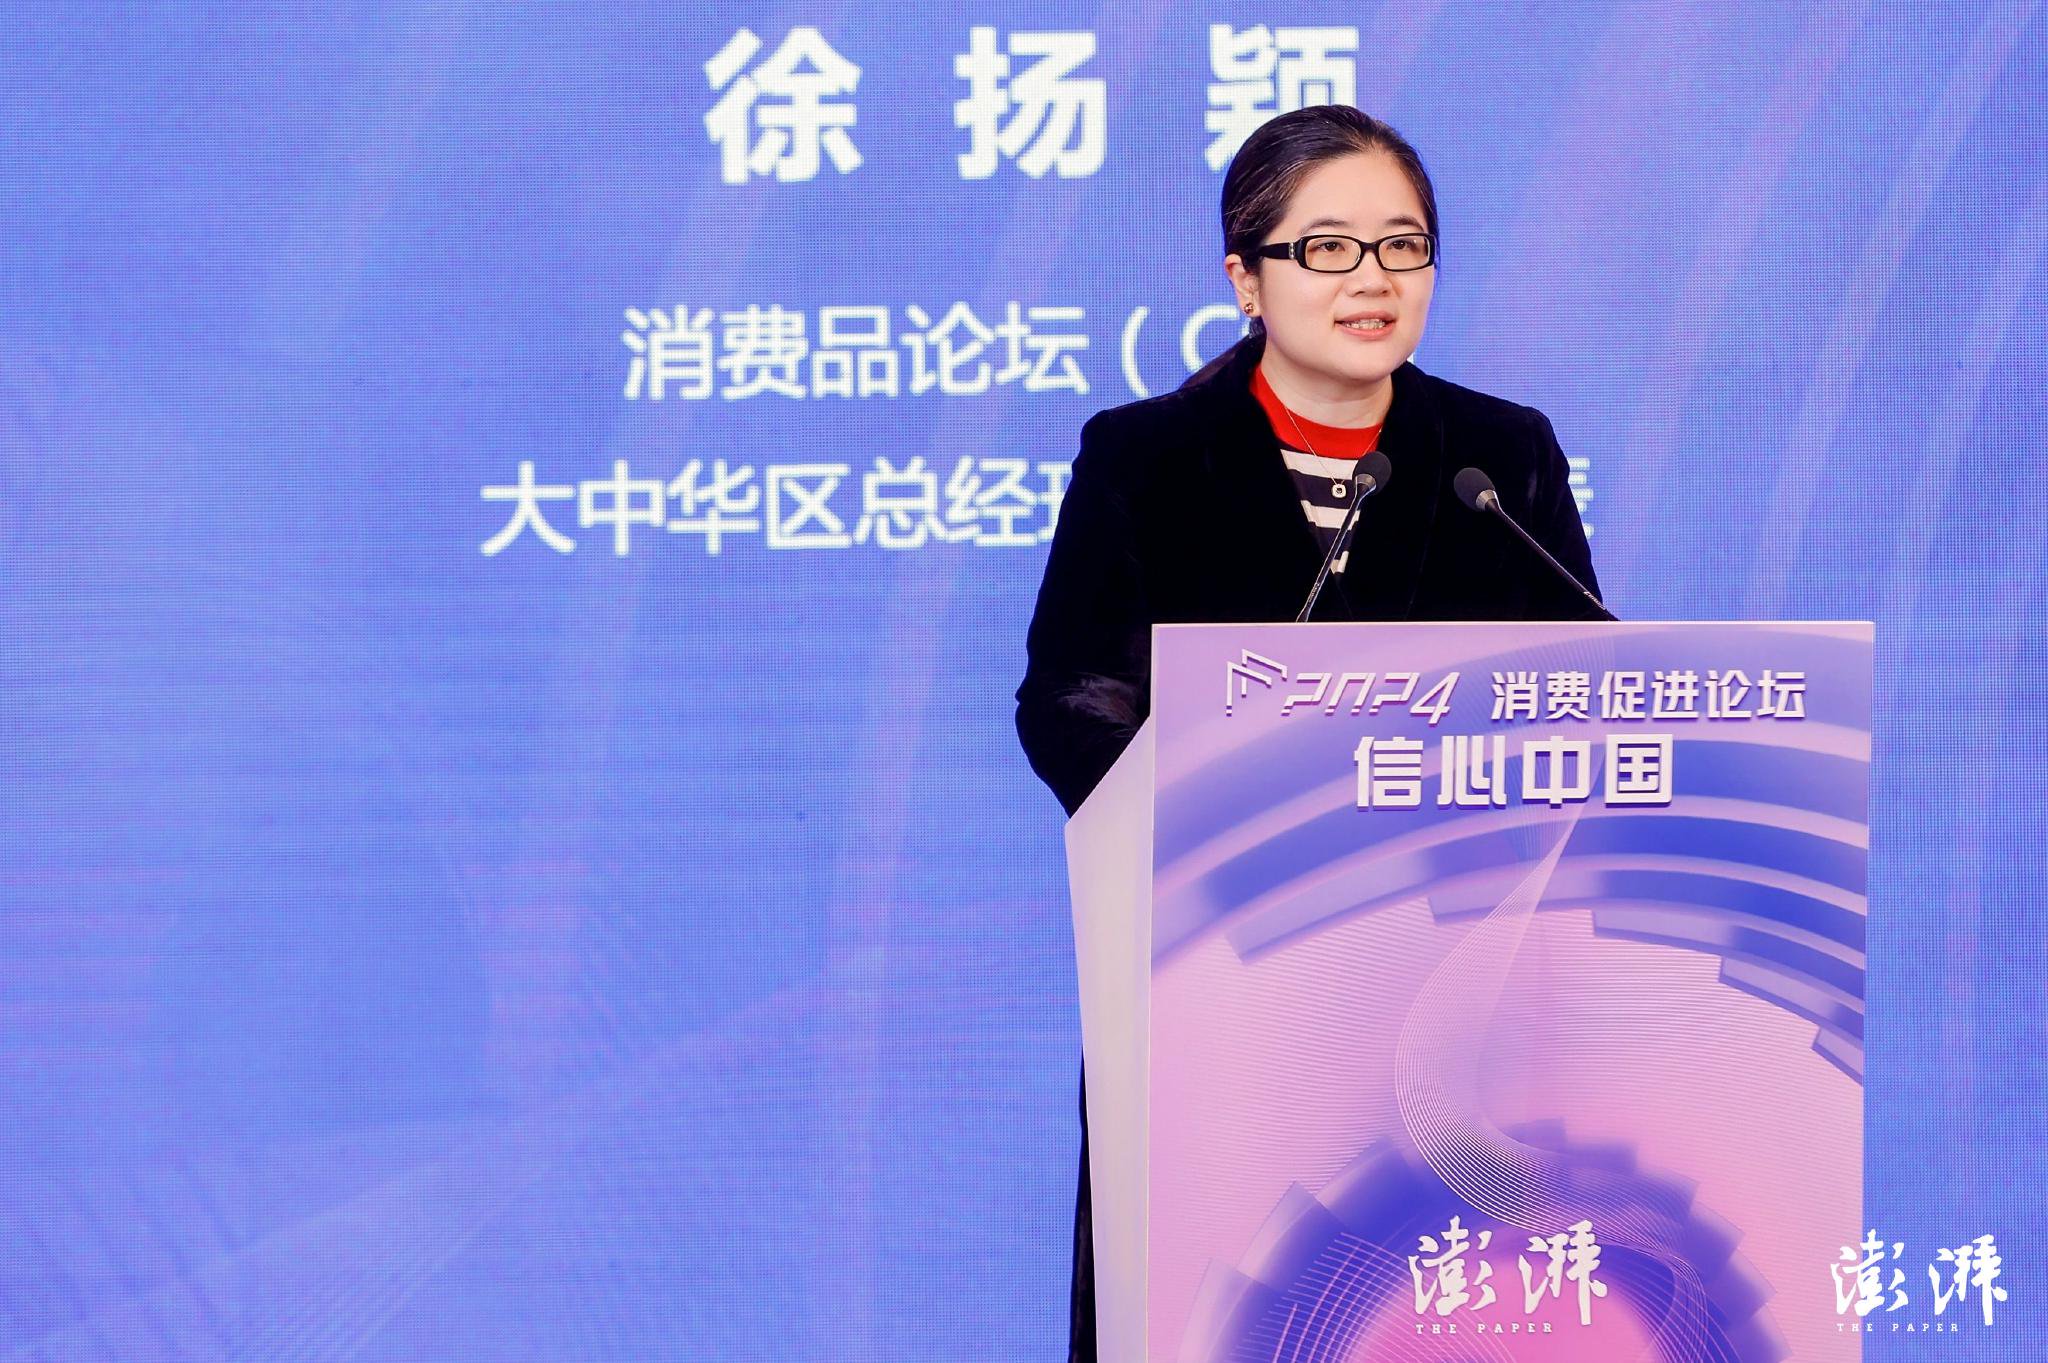 消费品论坛（CGF）大中华区总经理、首席代表徐扬颖